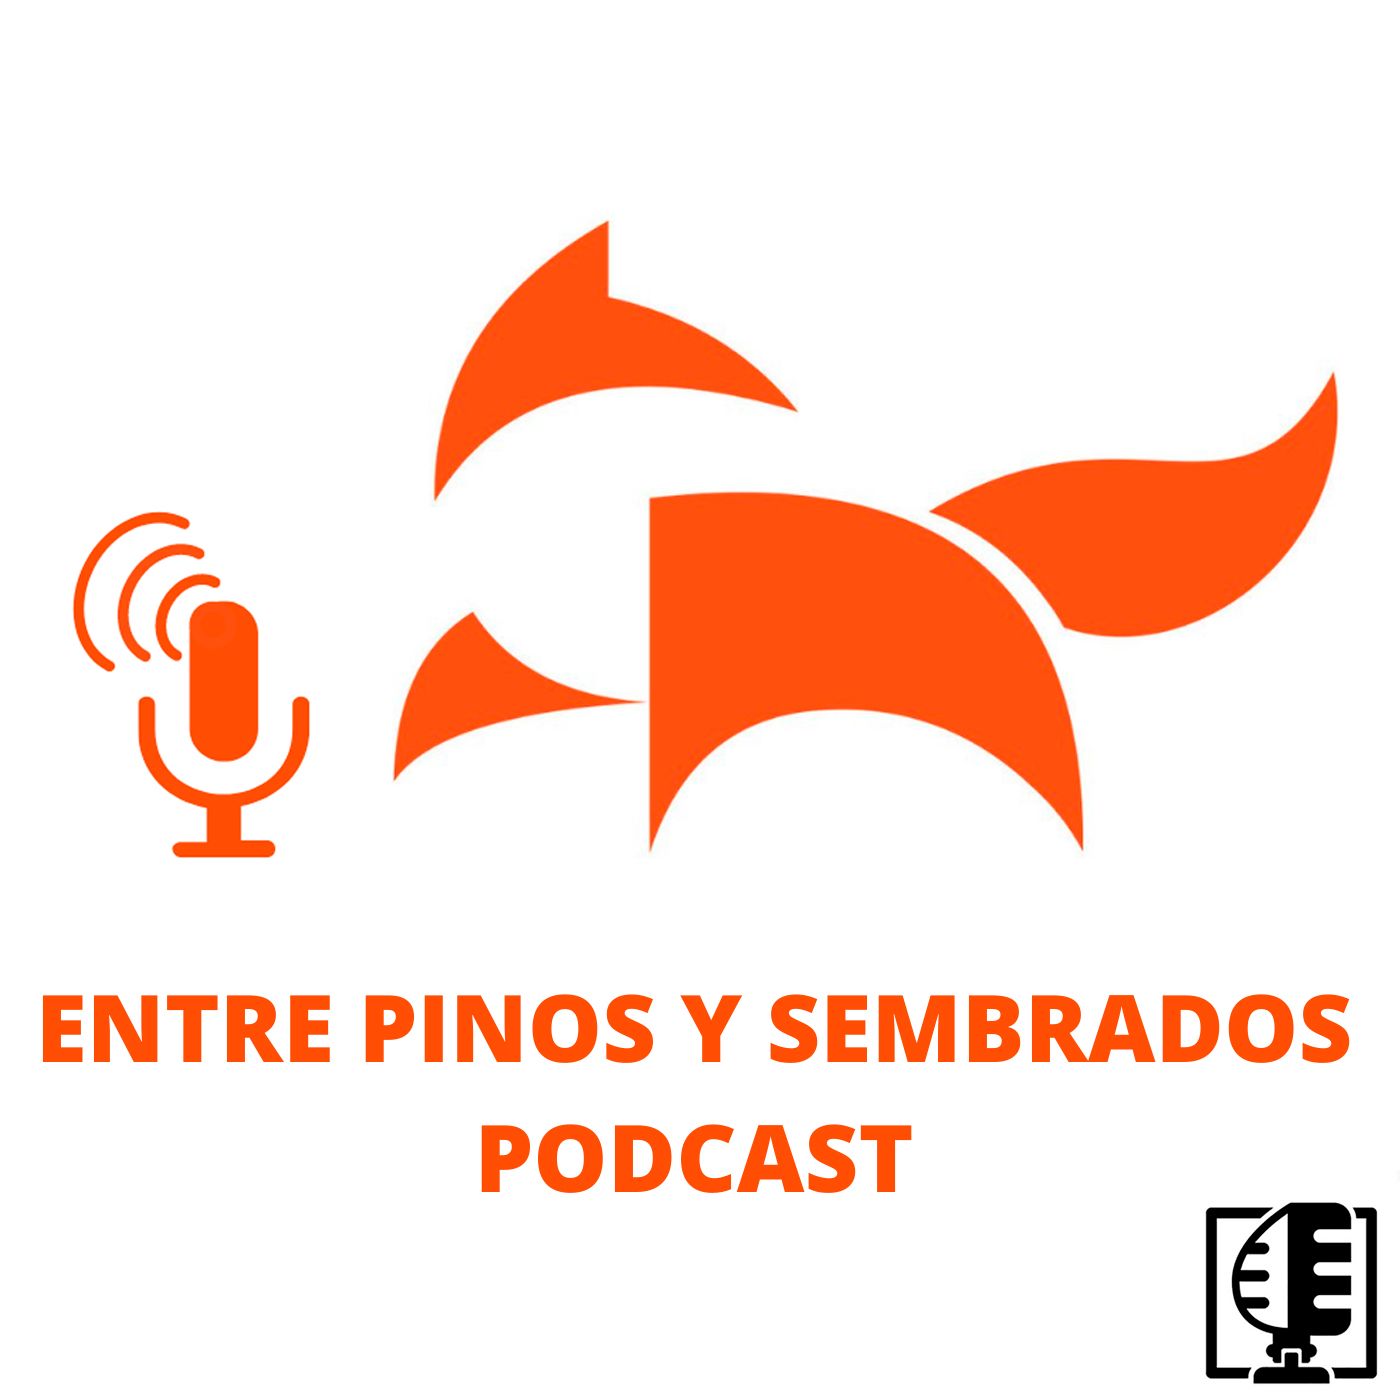 Presentación "Entre pinos y sembrados Podcast" #00